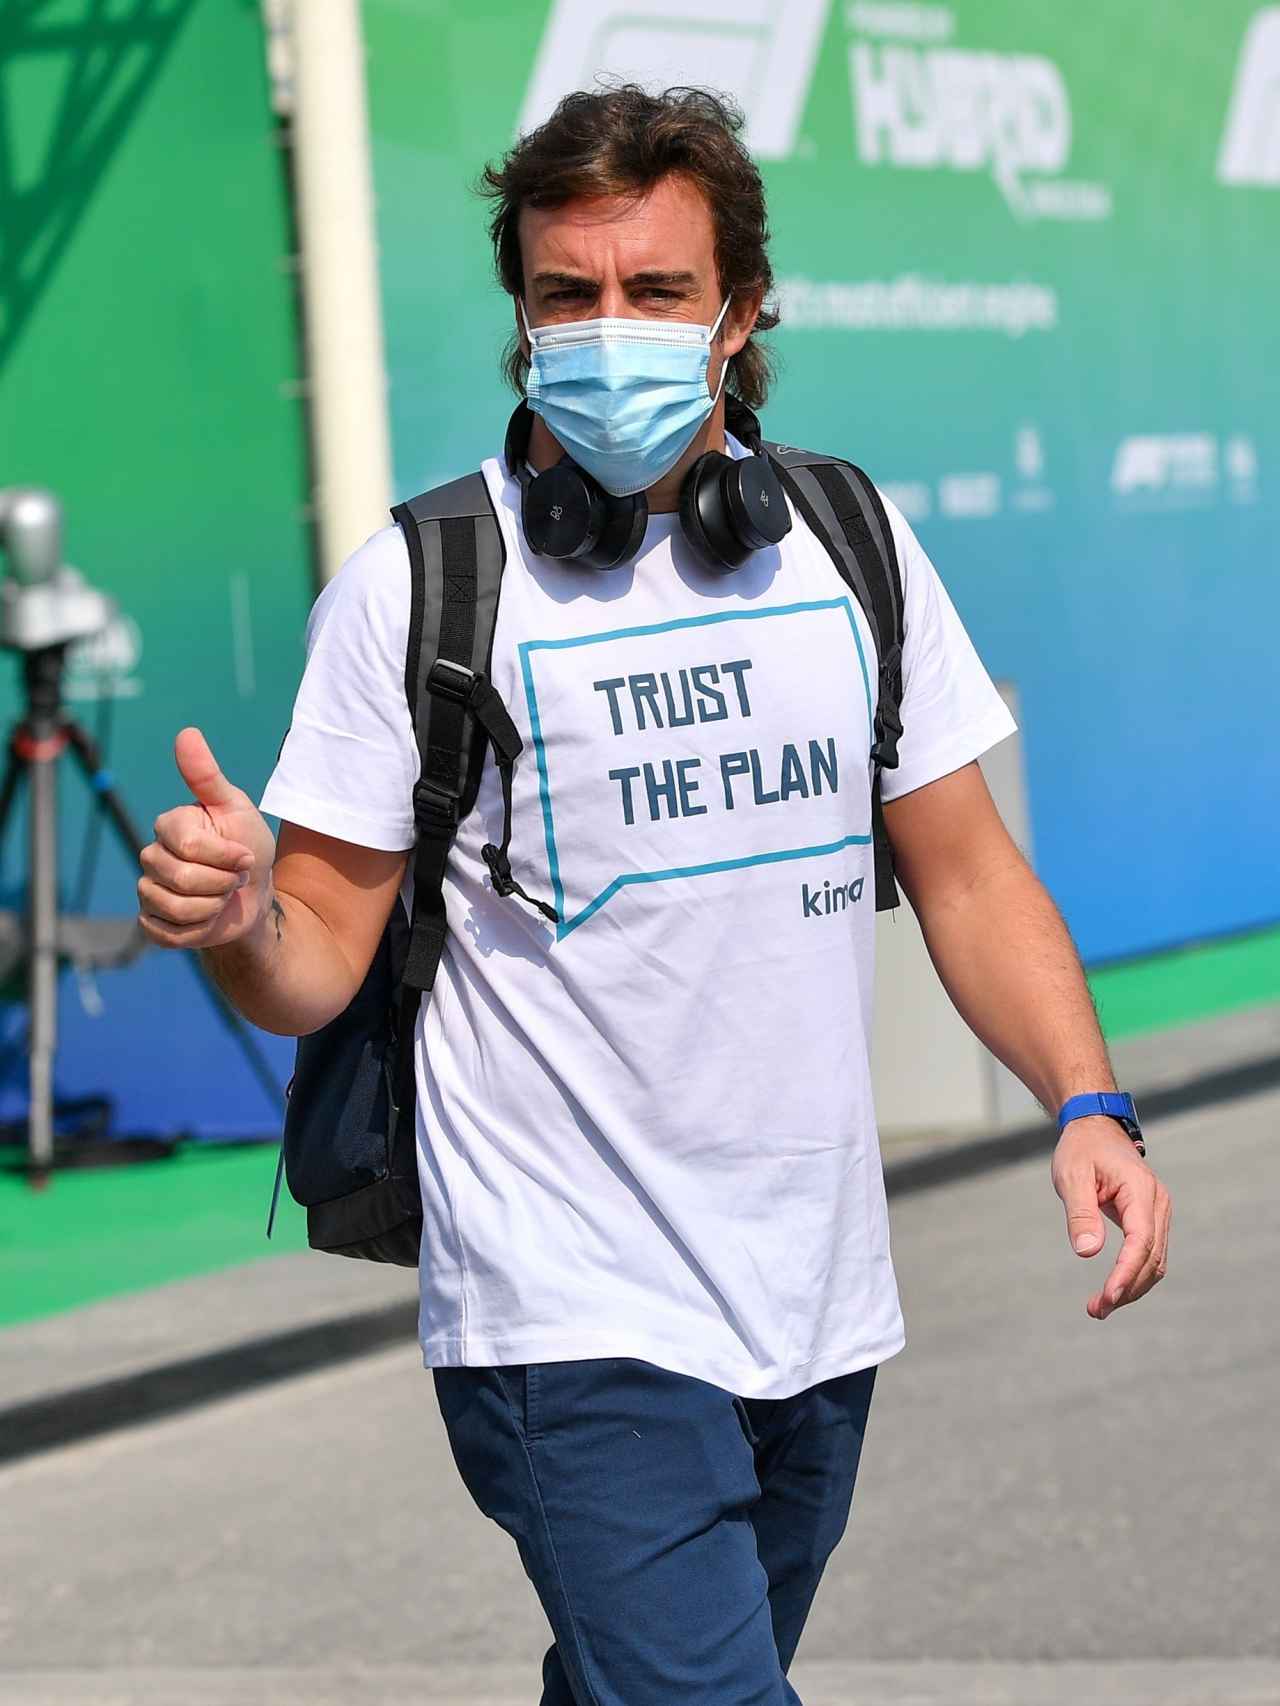 La camiseta de Fernando Alonso que causa furor en Twitter Fórmula 1: Cree  en El Plan